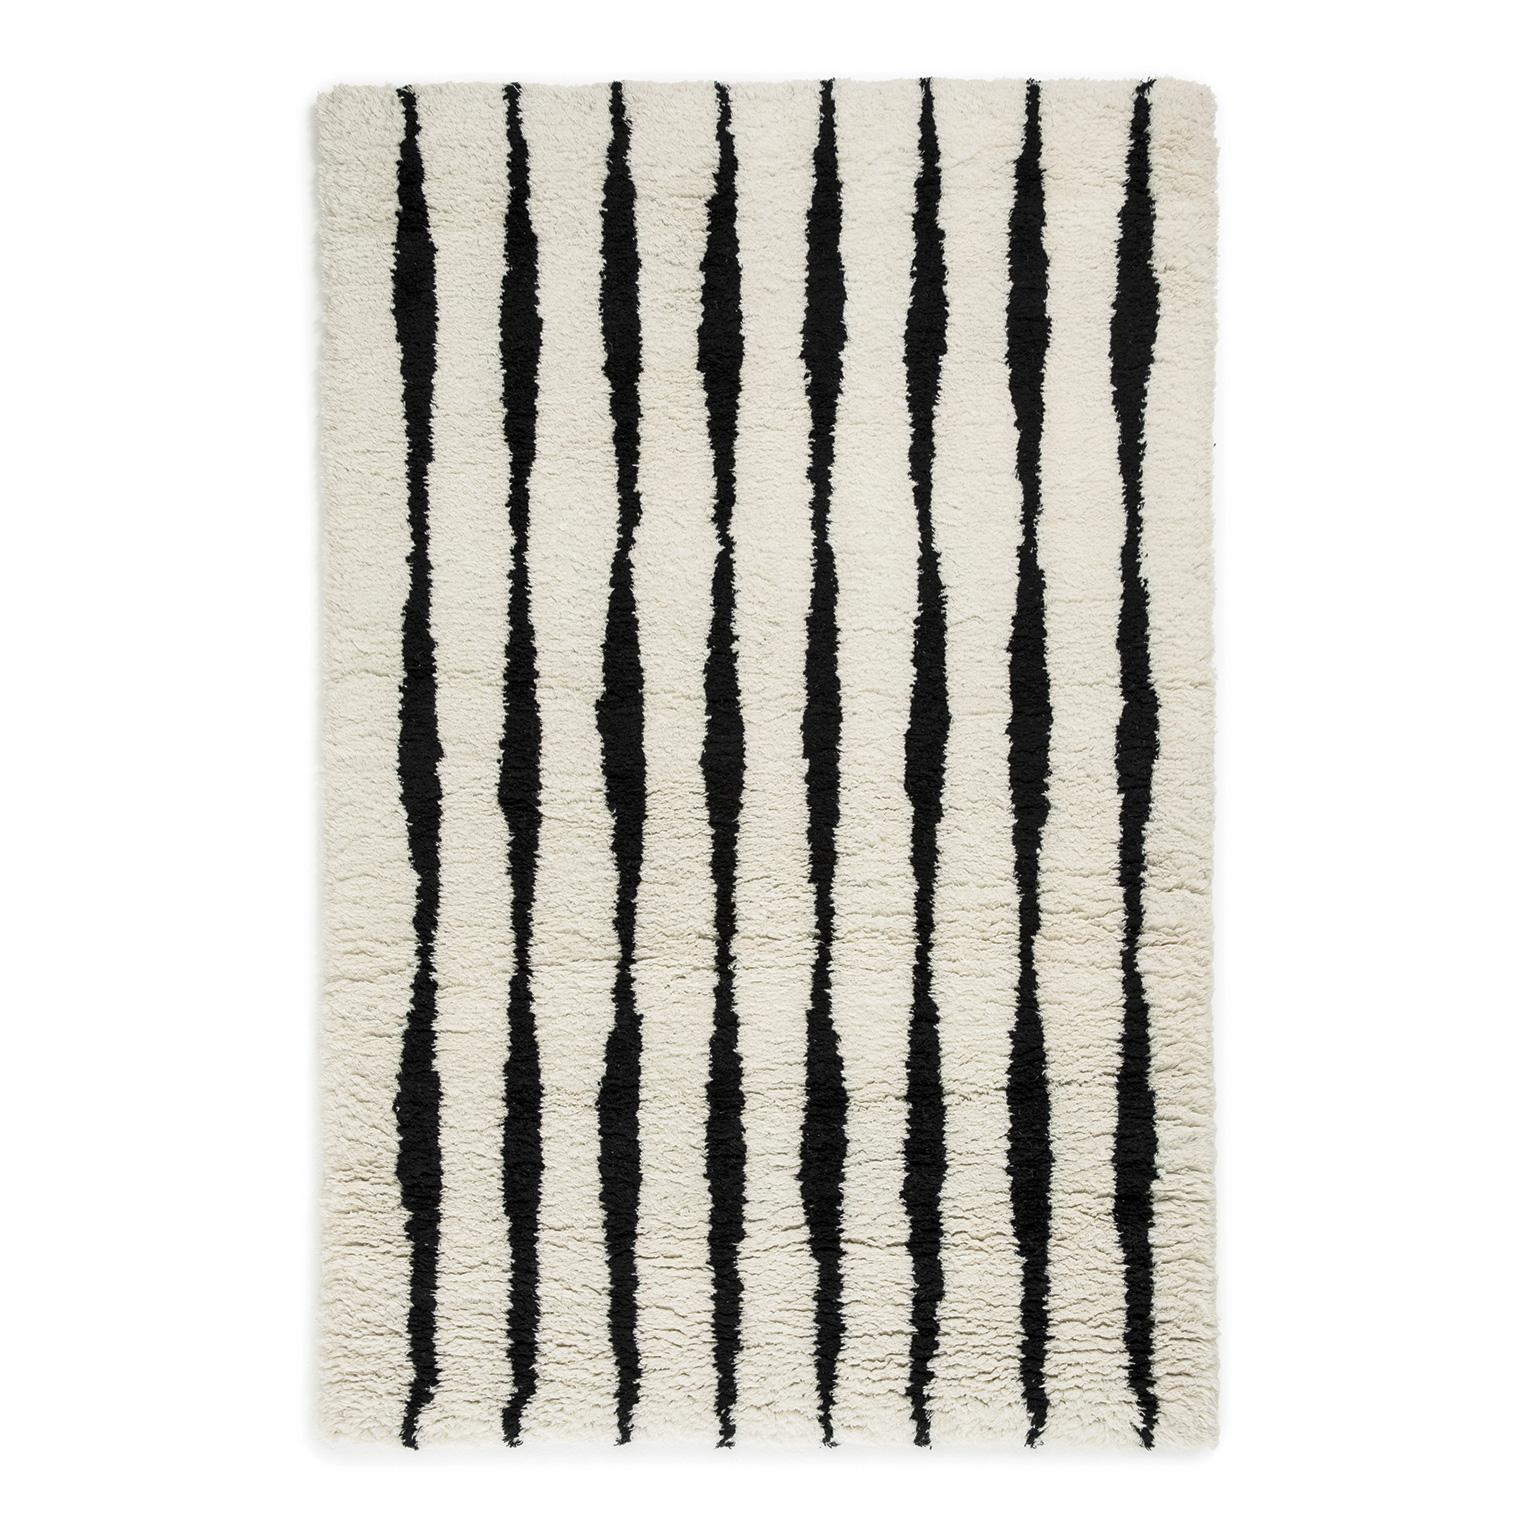 Fjord, zotteliger Berberteppich aus Wolle in skandinavischem Design